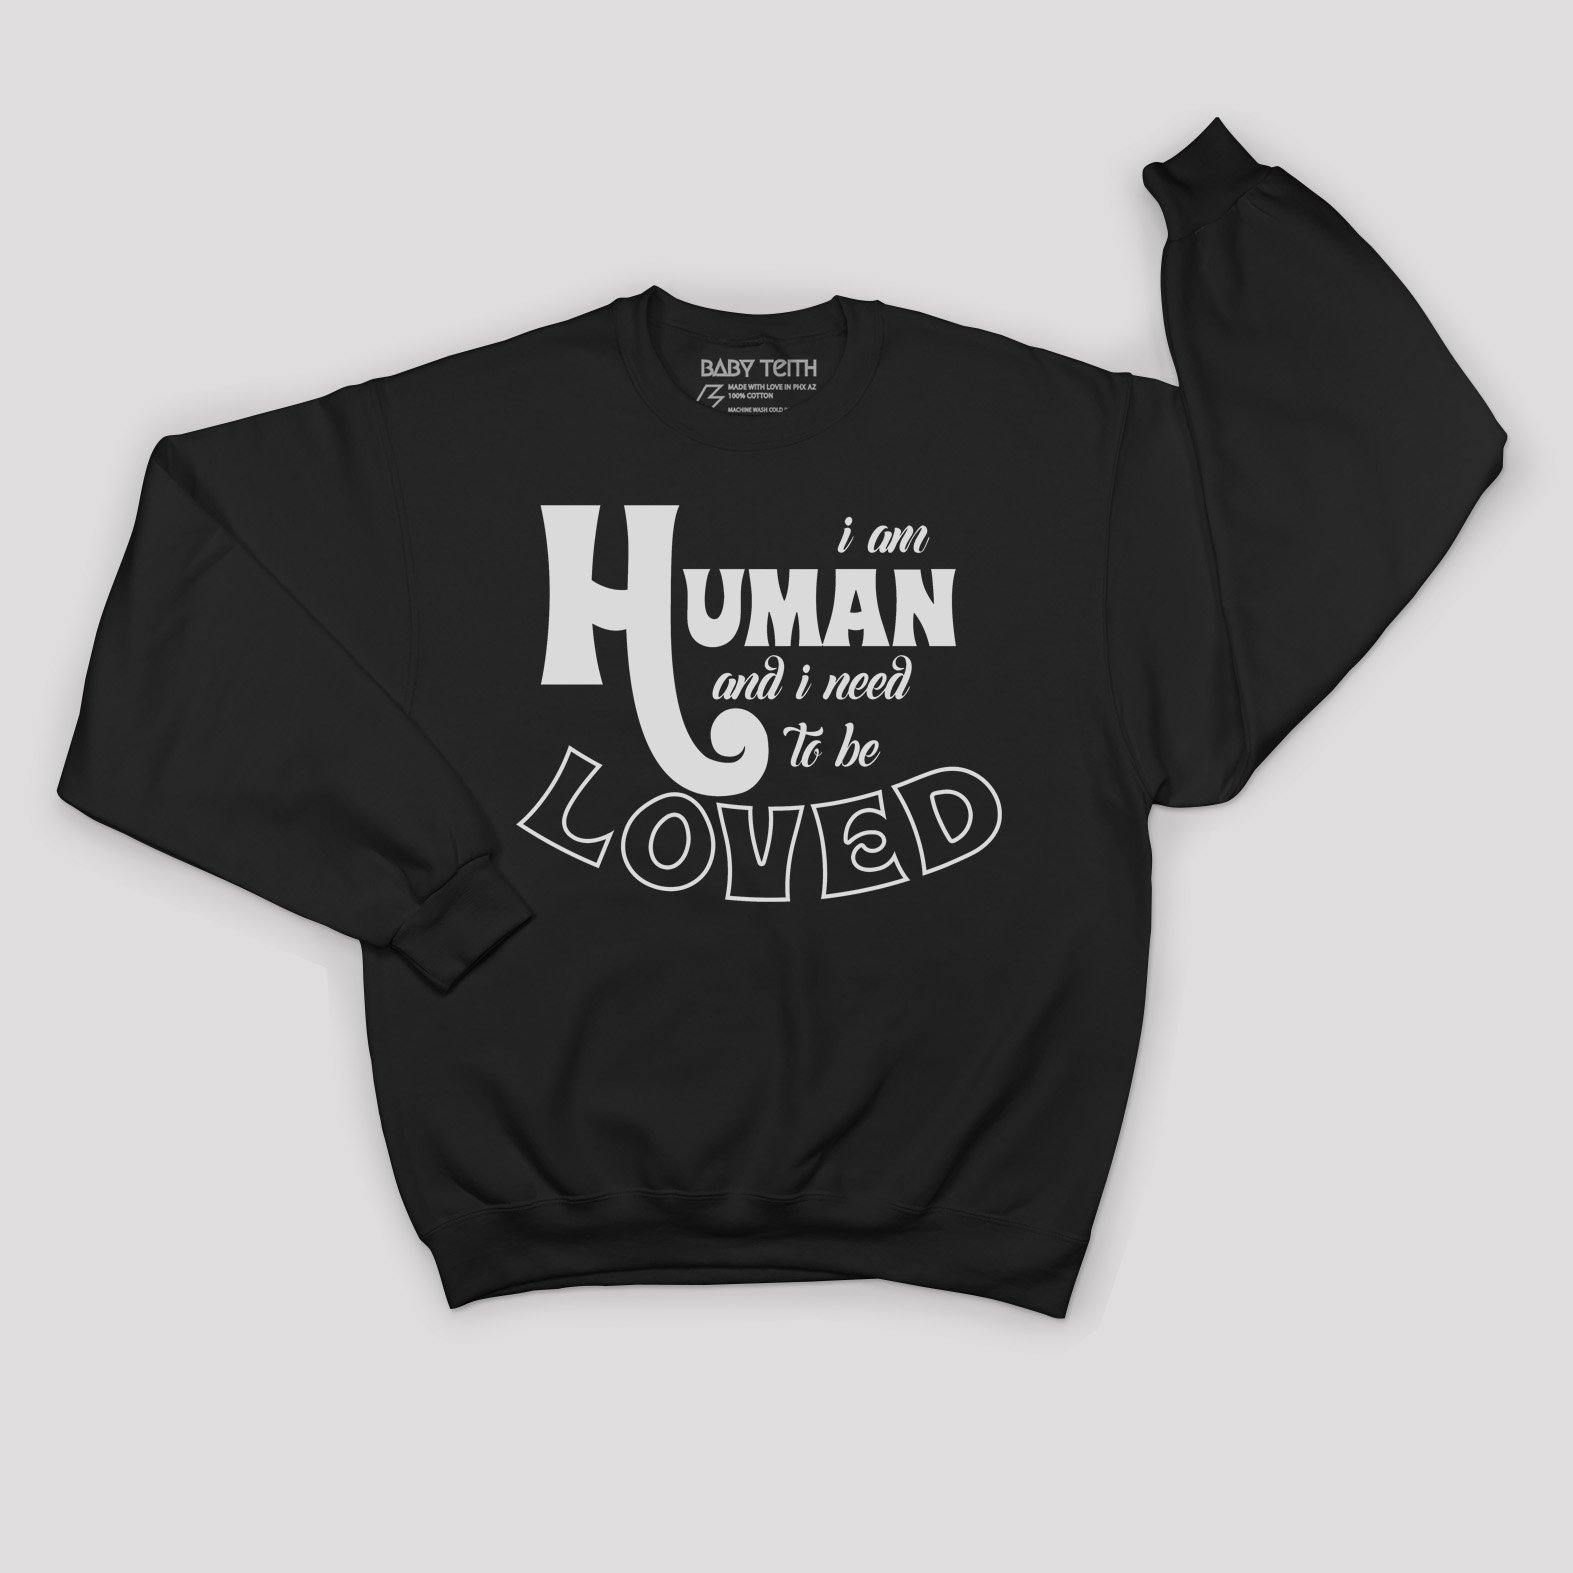 "I am Human" Fleece Sweatshirt for Kids - Baby Teith